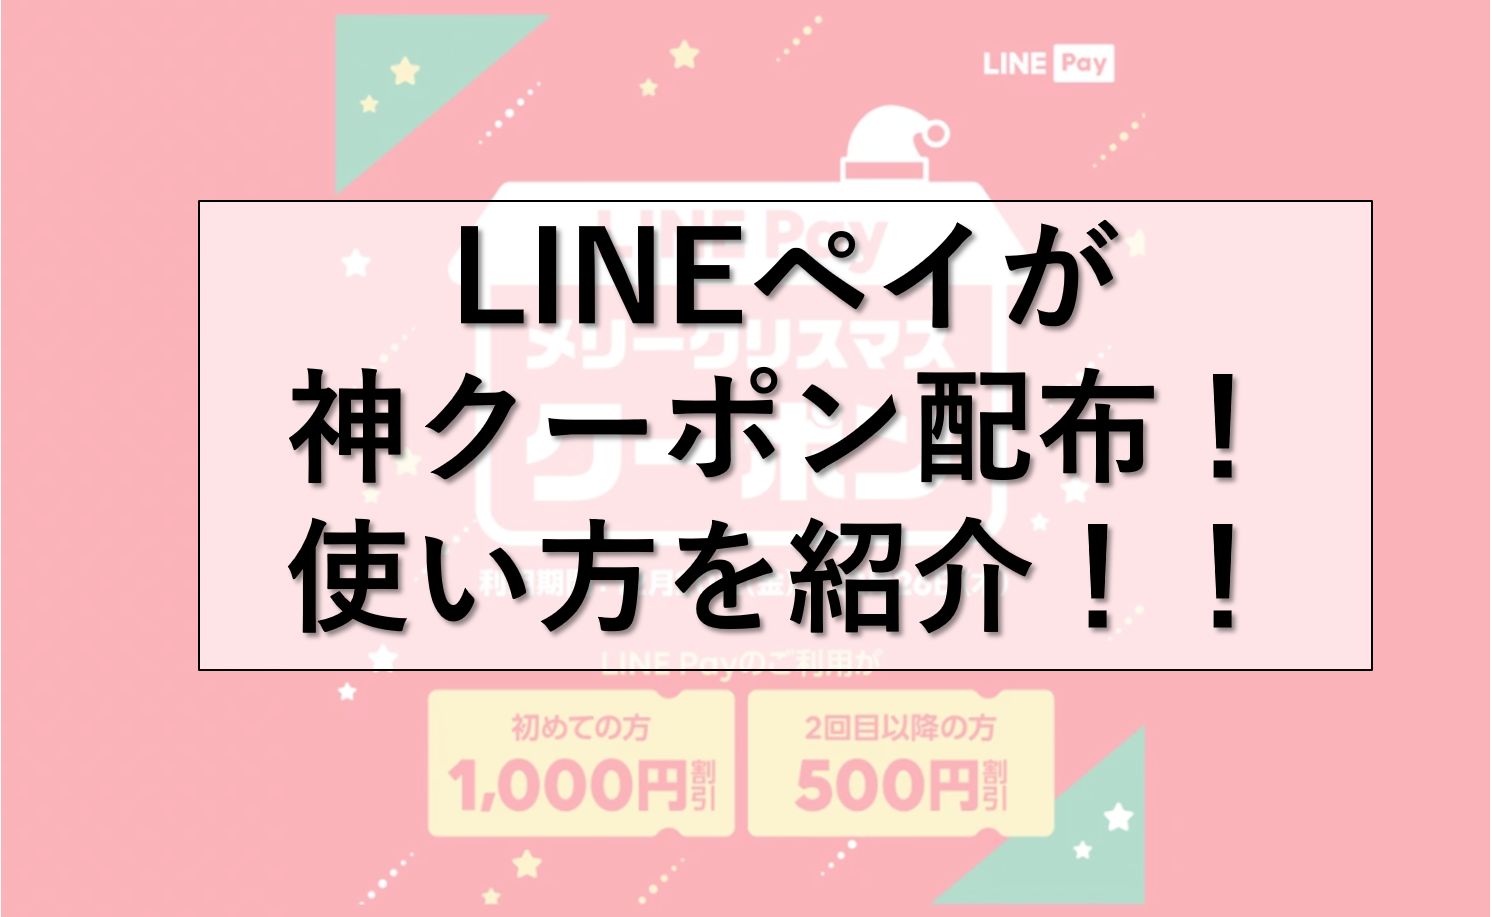 Line Pay で神クーポン配布 最大１０００円が使える スミオコミュニケーションズ